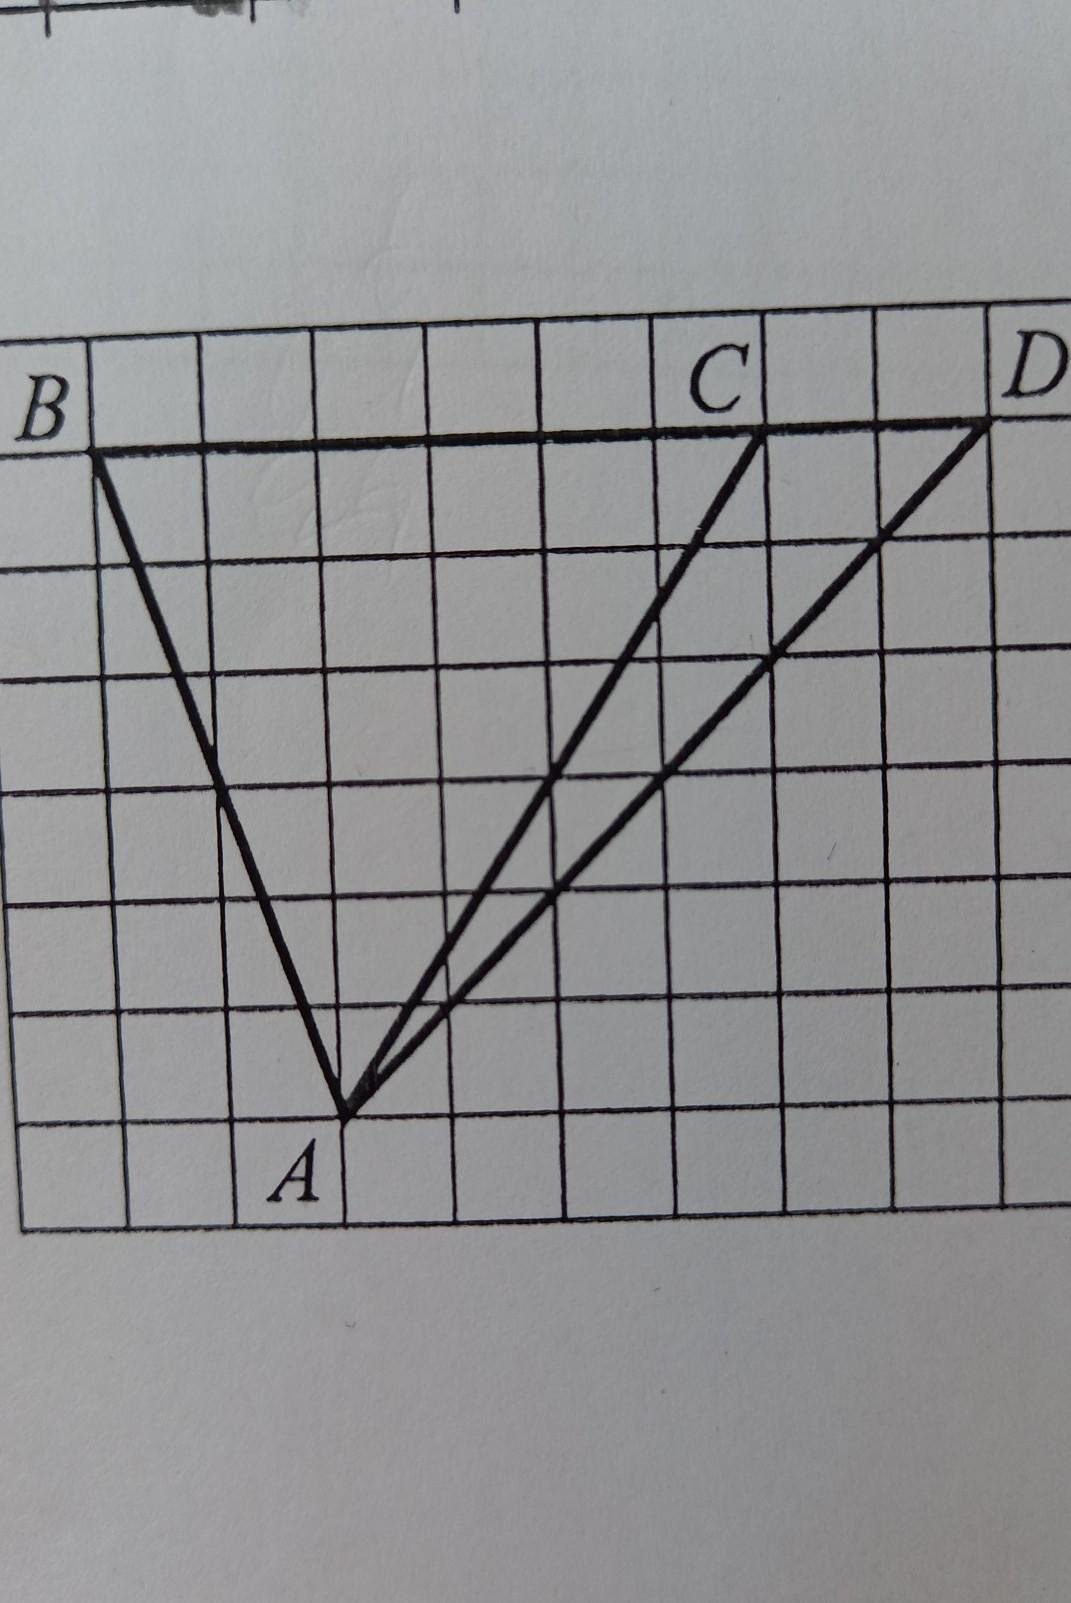 На клетчатой бумаге 1х1 нарисован треугольник. На клетчатой бумаге с размером 1х1. На клетчатой бумаге с размером 1х1 нарисован треугольник АВС. На клетчатой бумаге с размером клетки 1х1 нарисован треугольник. Клетки 1 x 1 нарисован треугольник ABC Найдите.